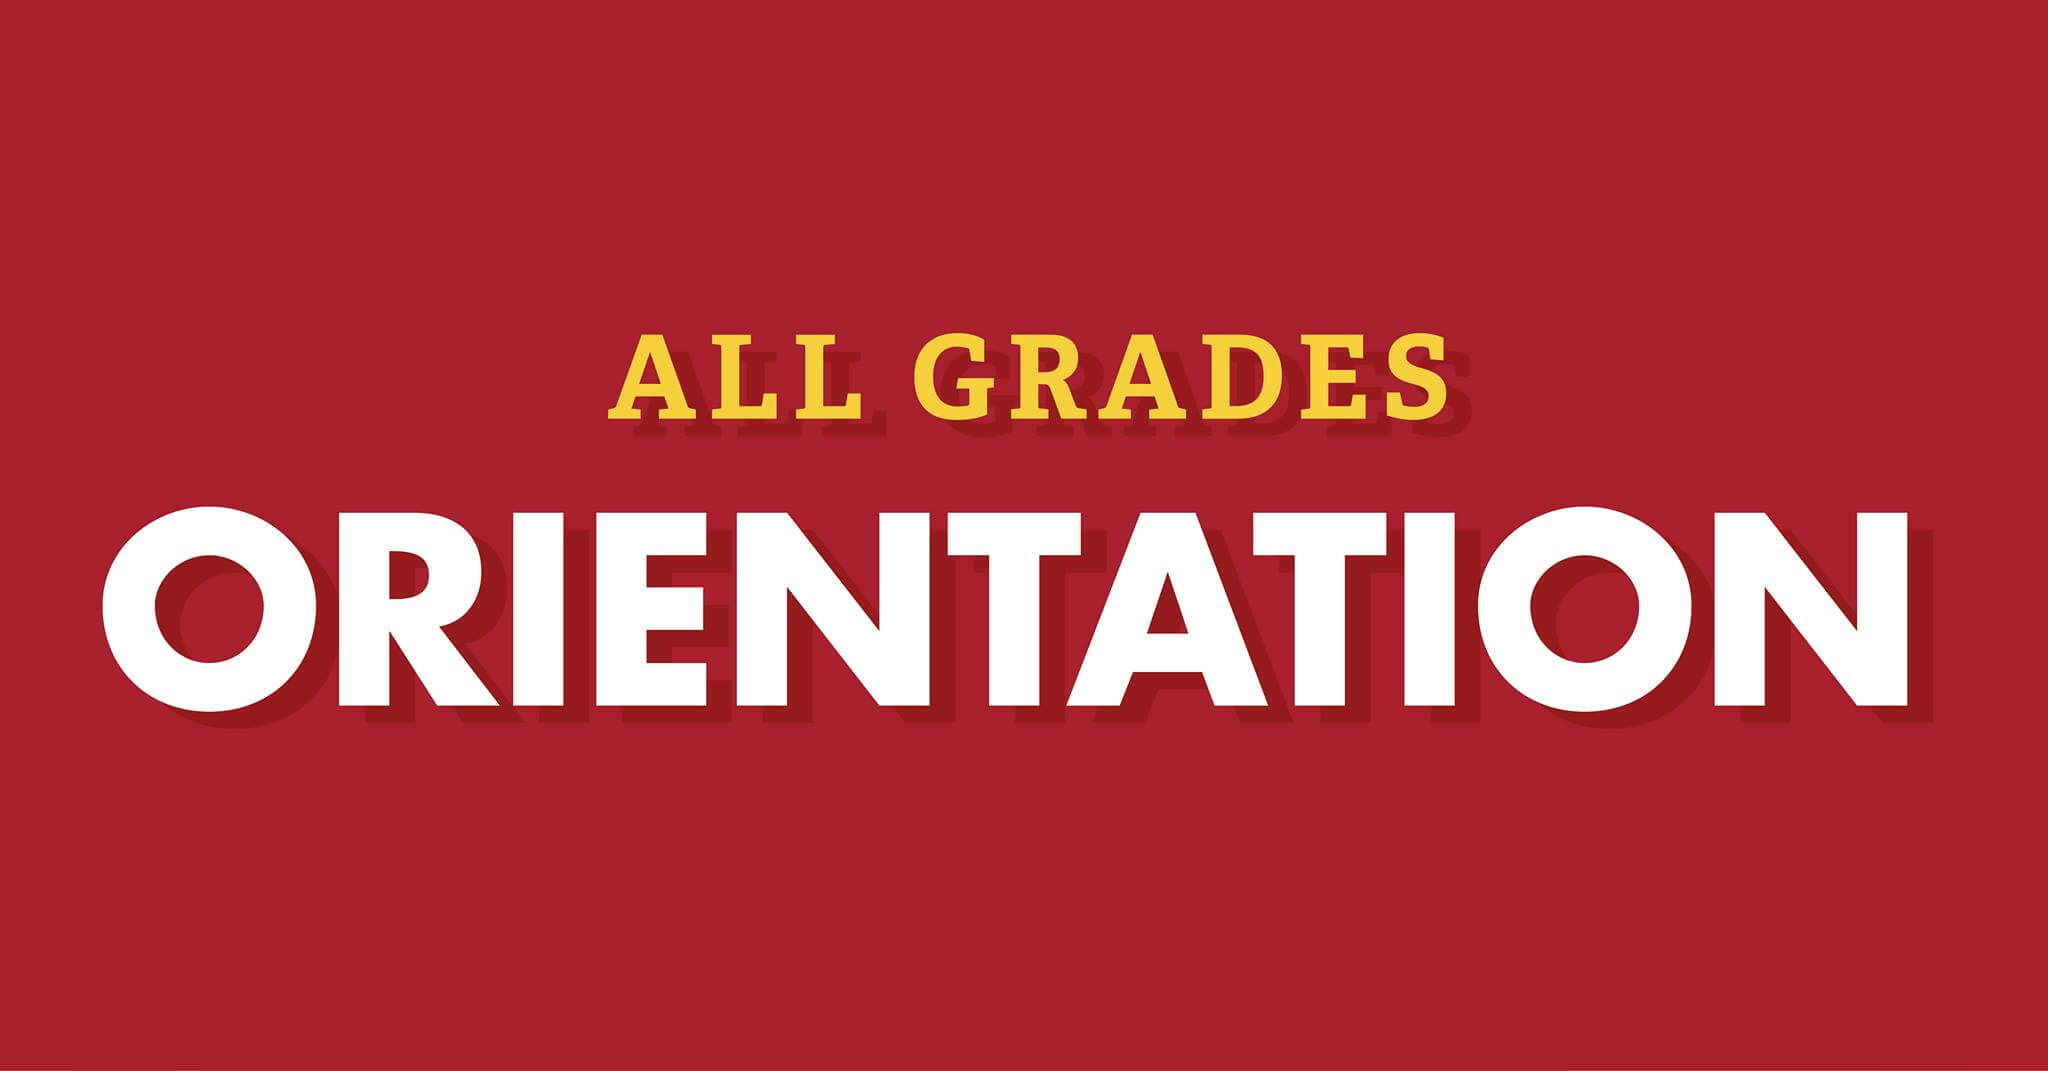 All grades orientation